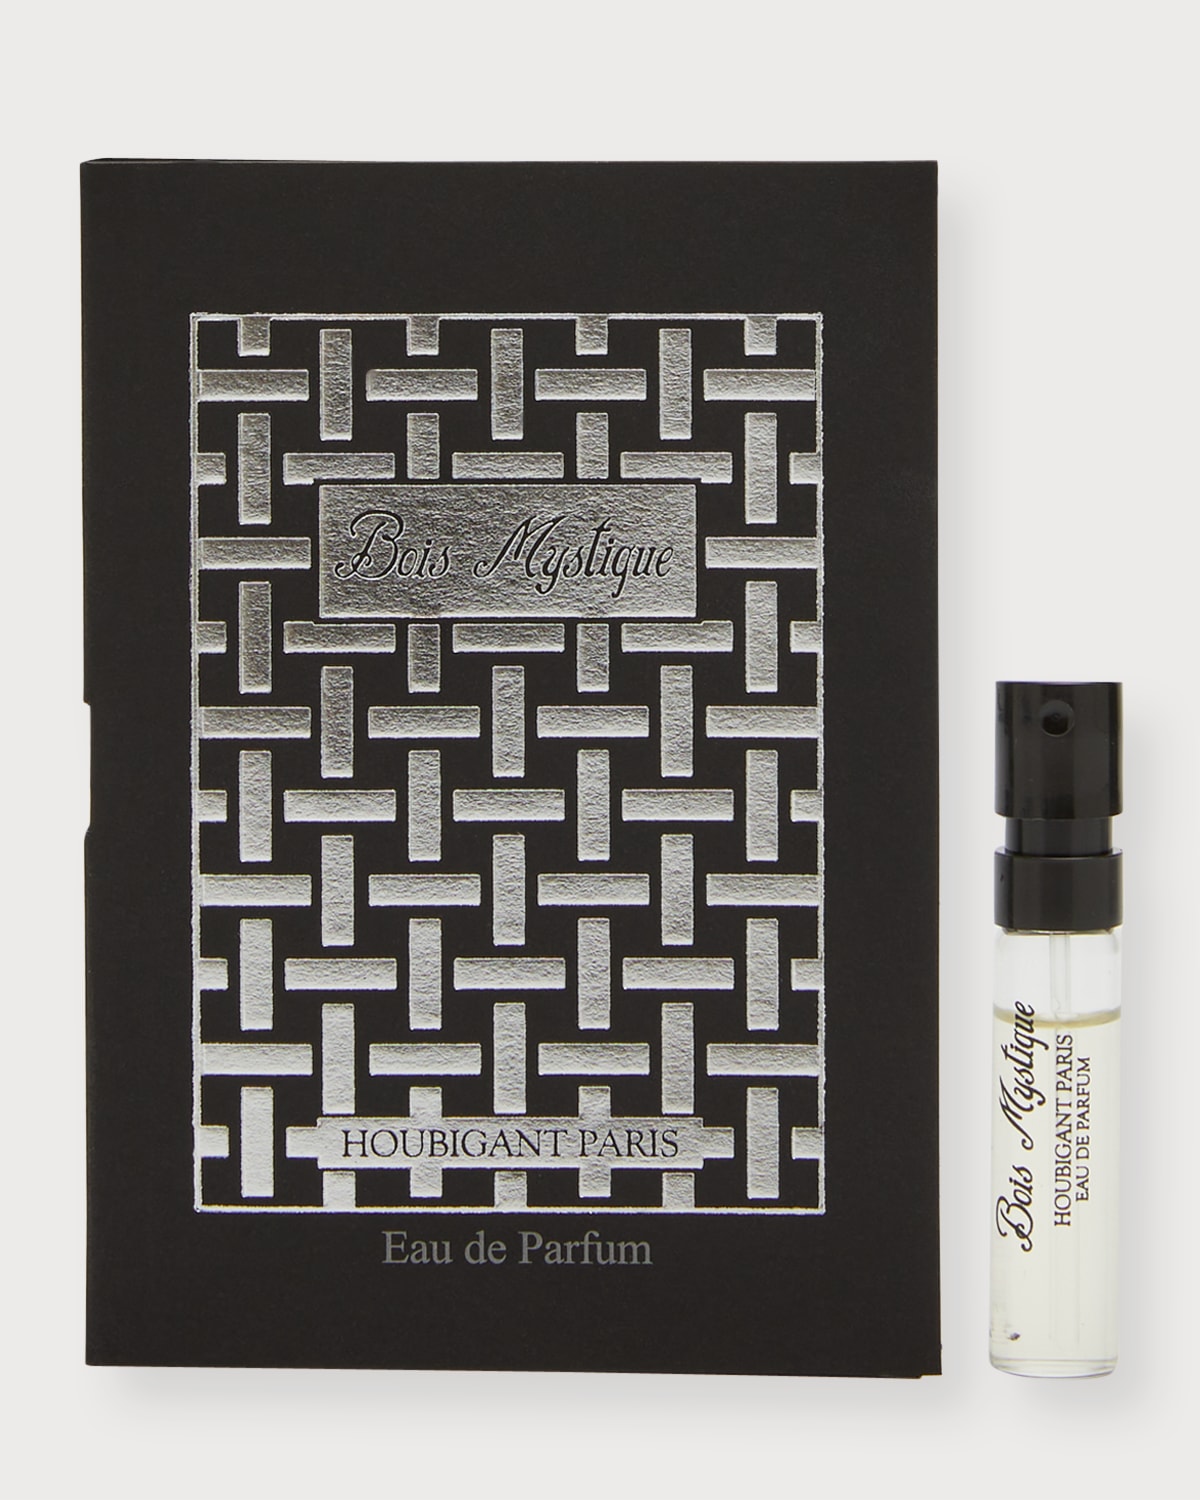 Bois Mystique Eau de Parfum, 2 mL - Yours with any $200 Houbigant Paris Purchase